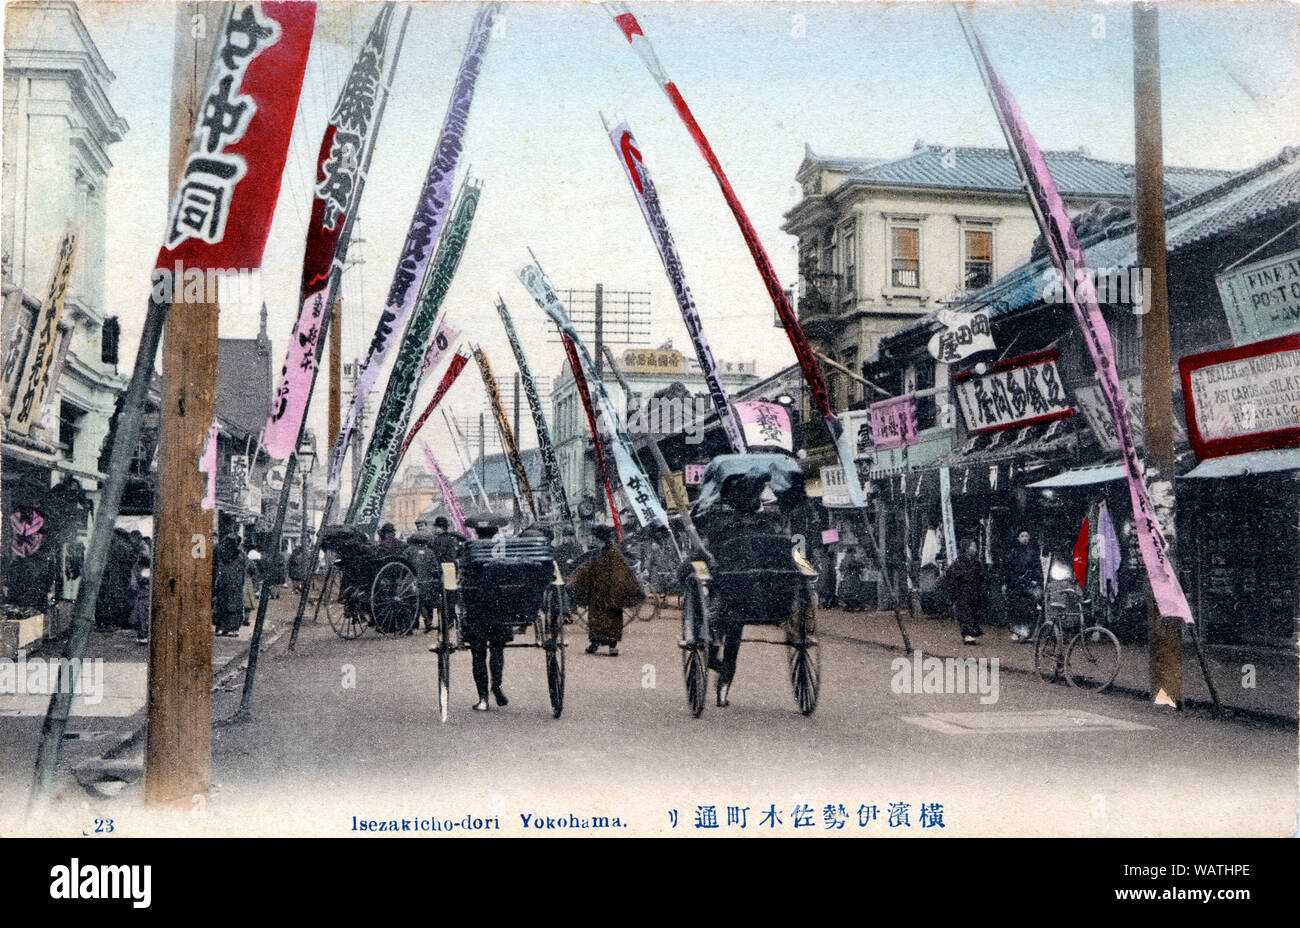 [ 1900 Giappone - Via del Teatro a Yokohama ] - Isezakicho-dori di Yokohama Kanagawa. Rickshaws gara passato colorato di banner pubblicitari. Sulla destra, parte di Hamaya Shoten può essere visto, uno dei numerosi negozi di Yokohama per la vendita di cartoline come questa. Xx secolo cartolina vintage. Foto Stock